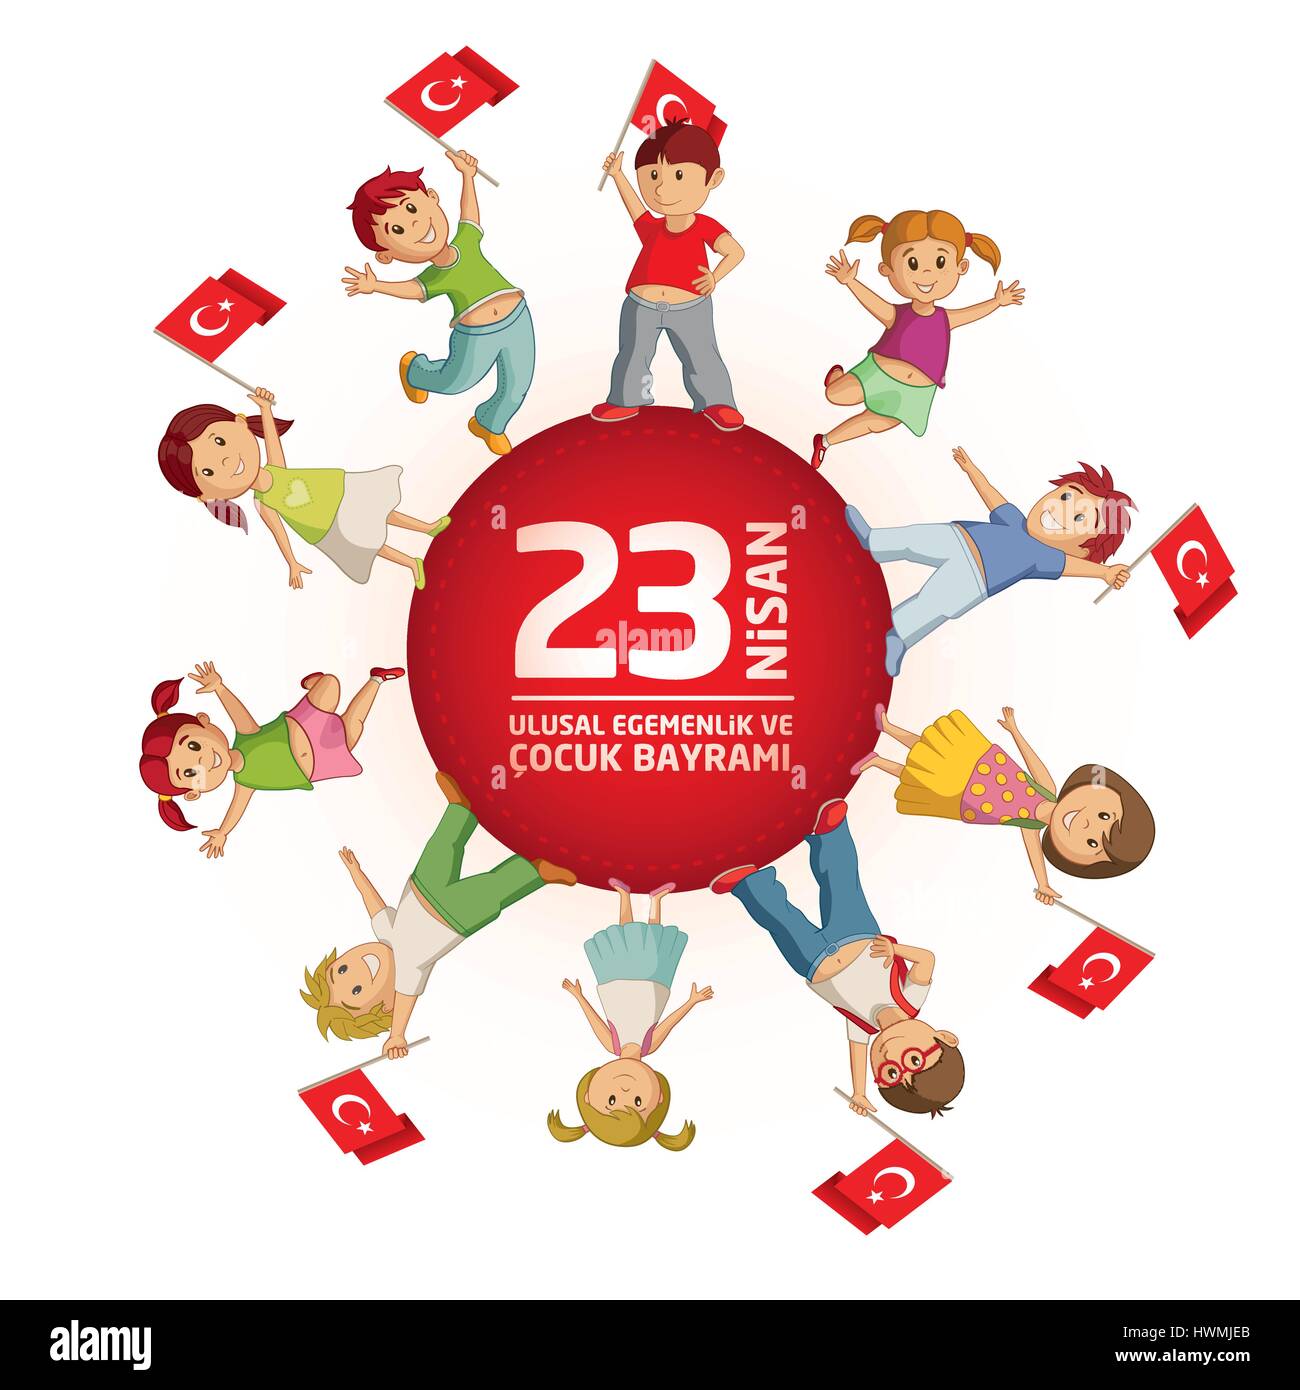 Illustrazione Vettoriale del 23 Nisan Çocuk Bayrami, aprile 23 turco la sovranità nazionale e la Giornata per i bambini, il modello di progetto per la vacanza turco. Illustrazione Vettoriale